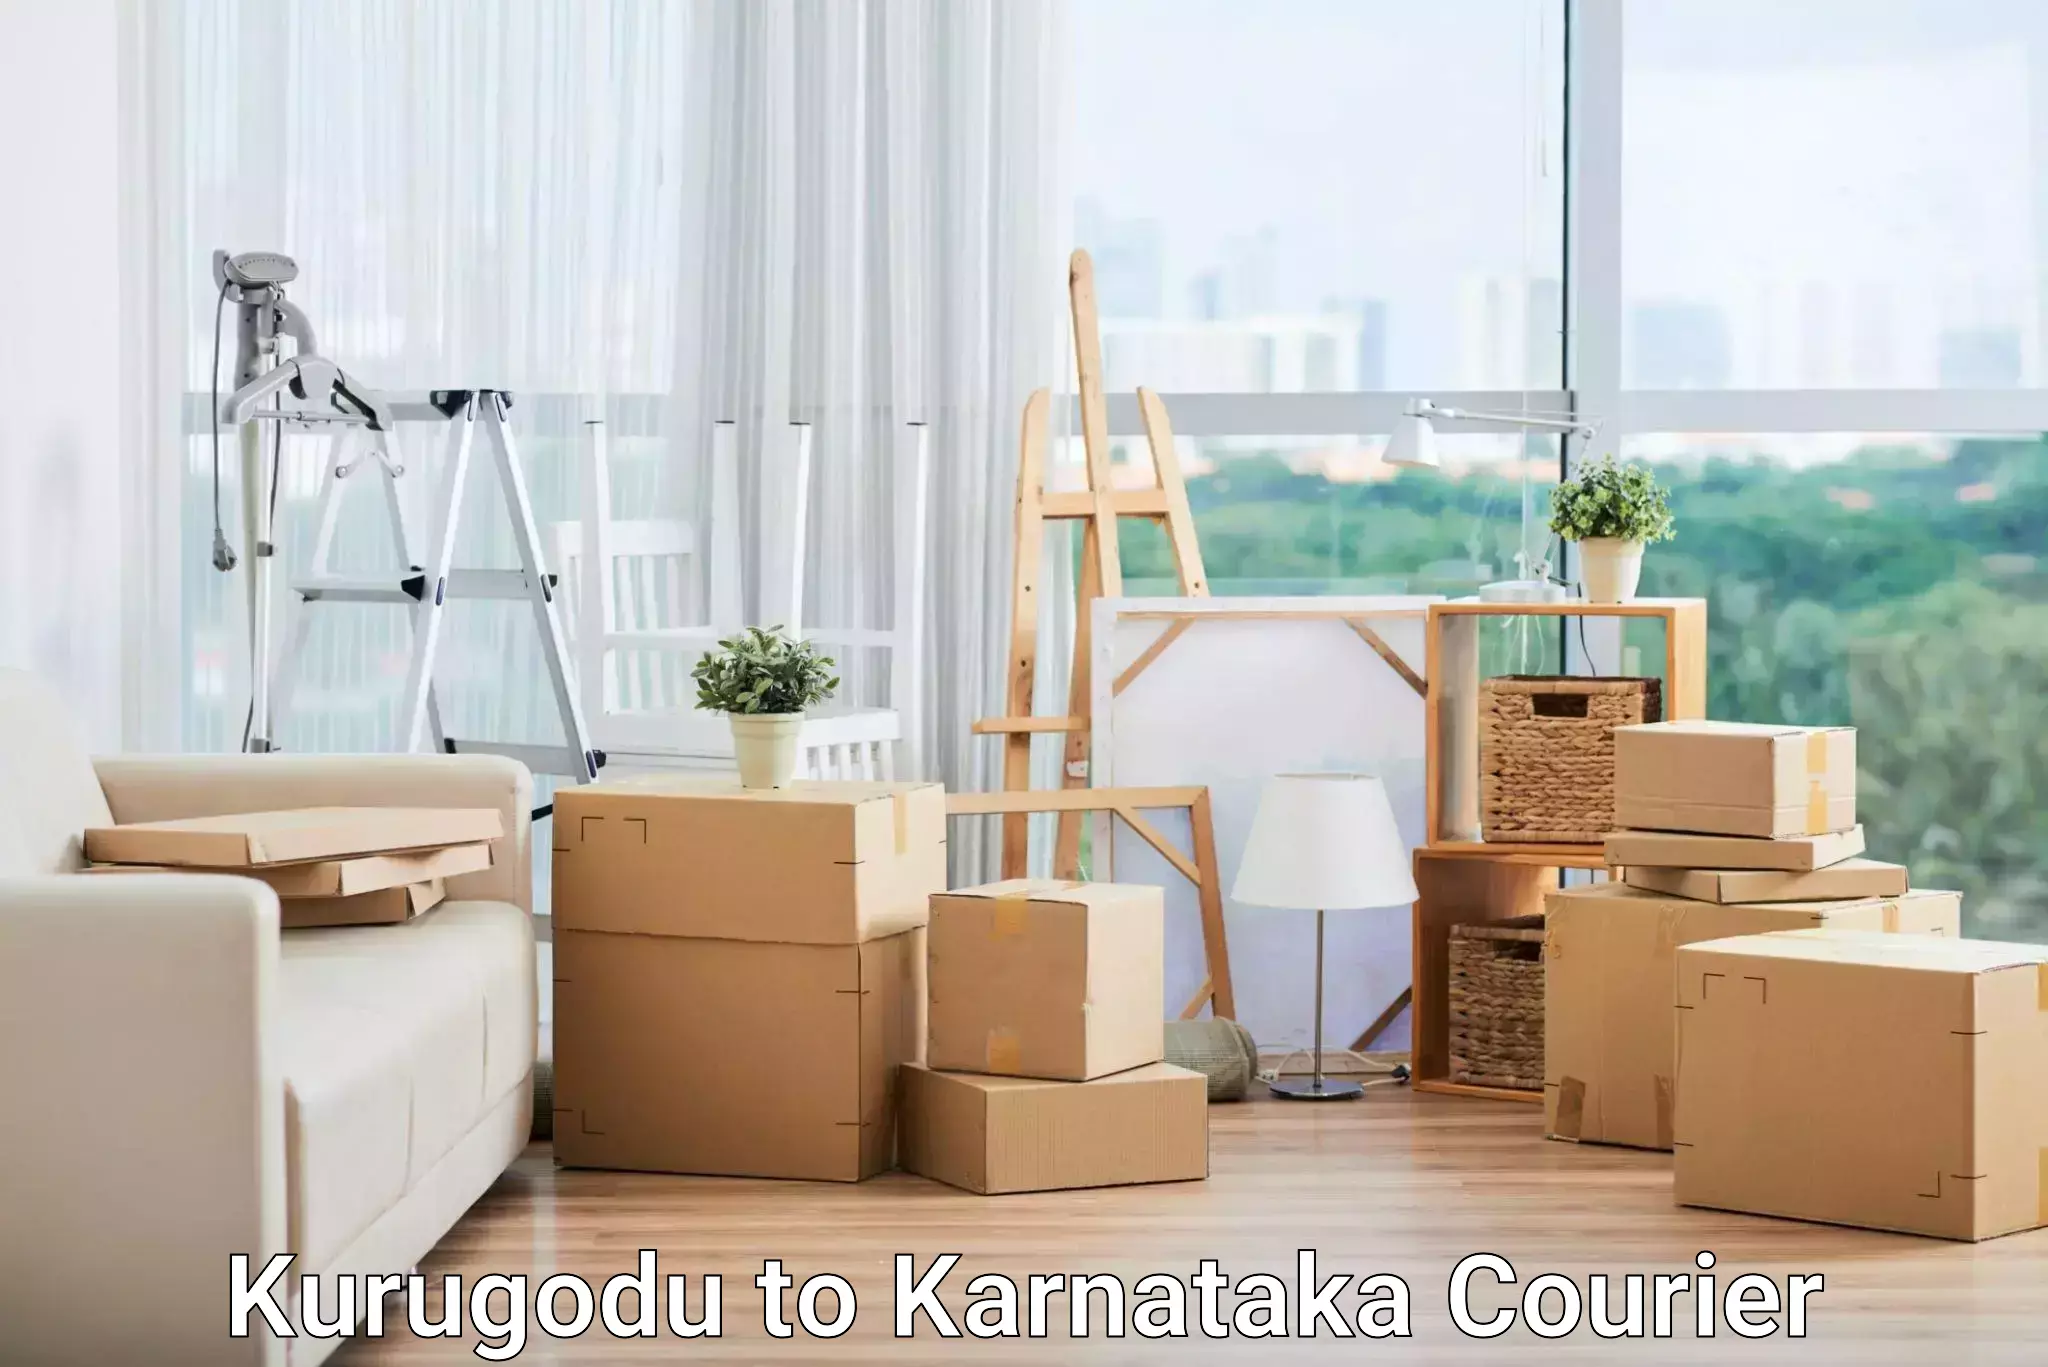 Comprehensive logistics Kurugodu to Karnataka